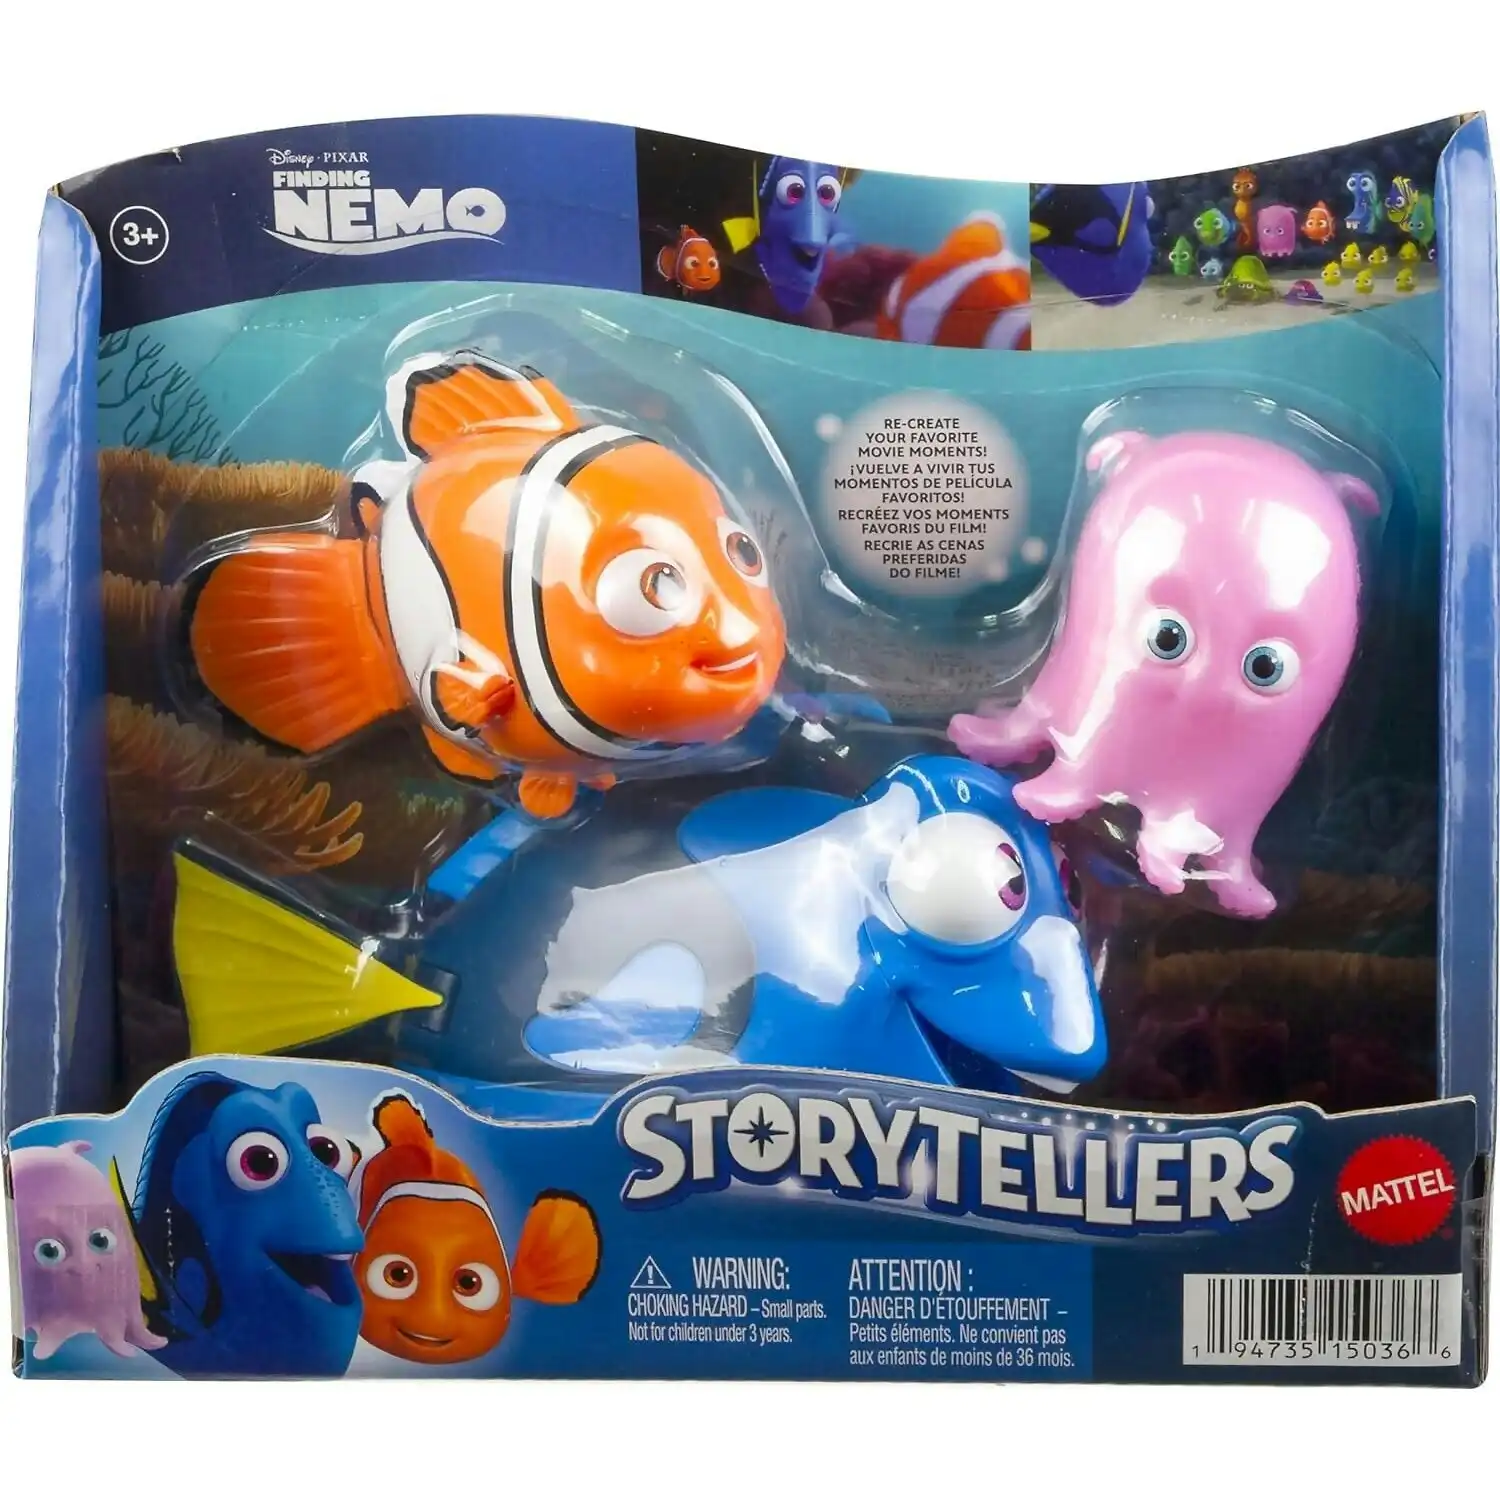 Disney - Pixar Finding Nemo Action Figure Storyteller 3 Pack Nemo Dory And Pearl - Mattel